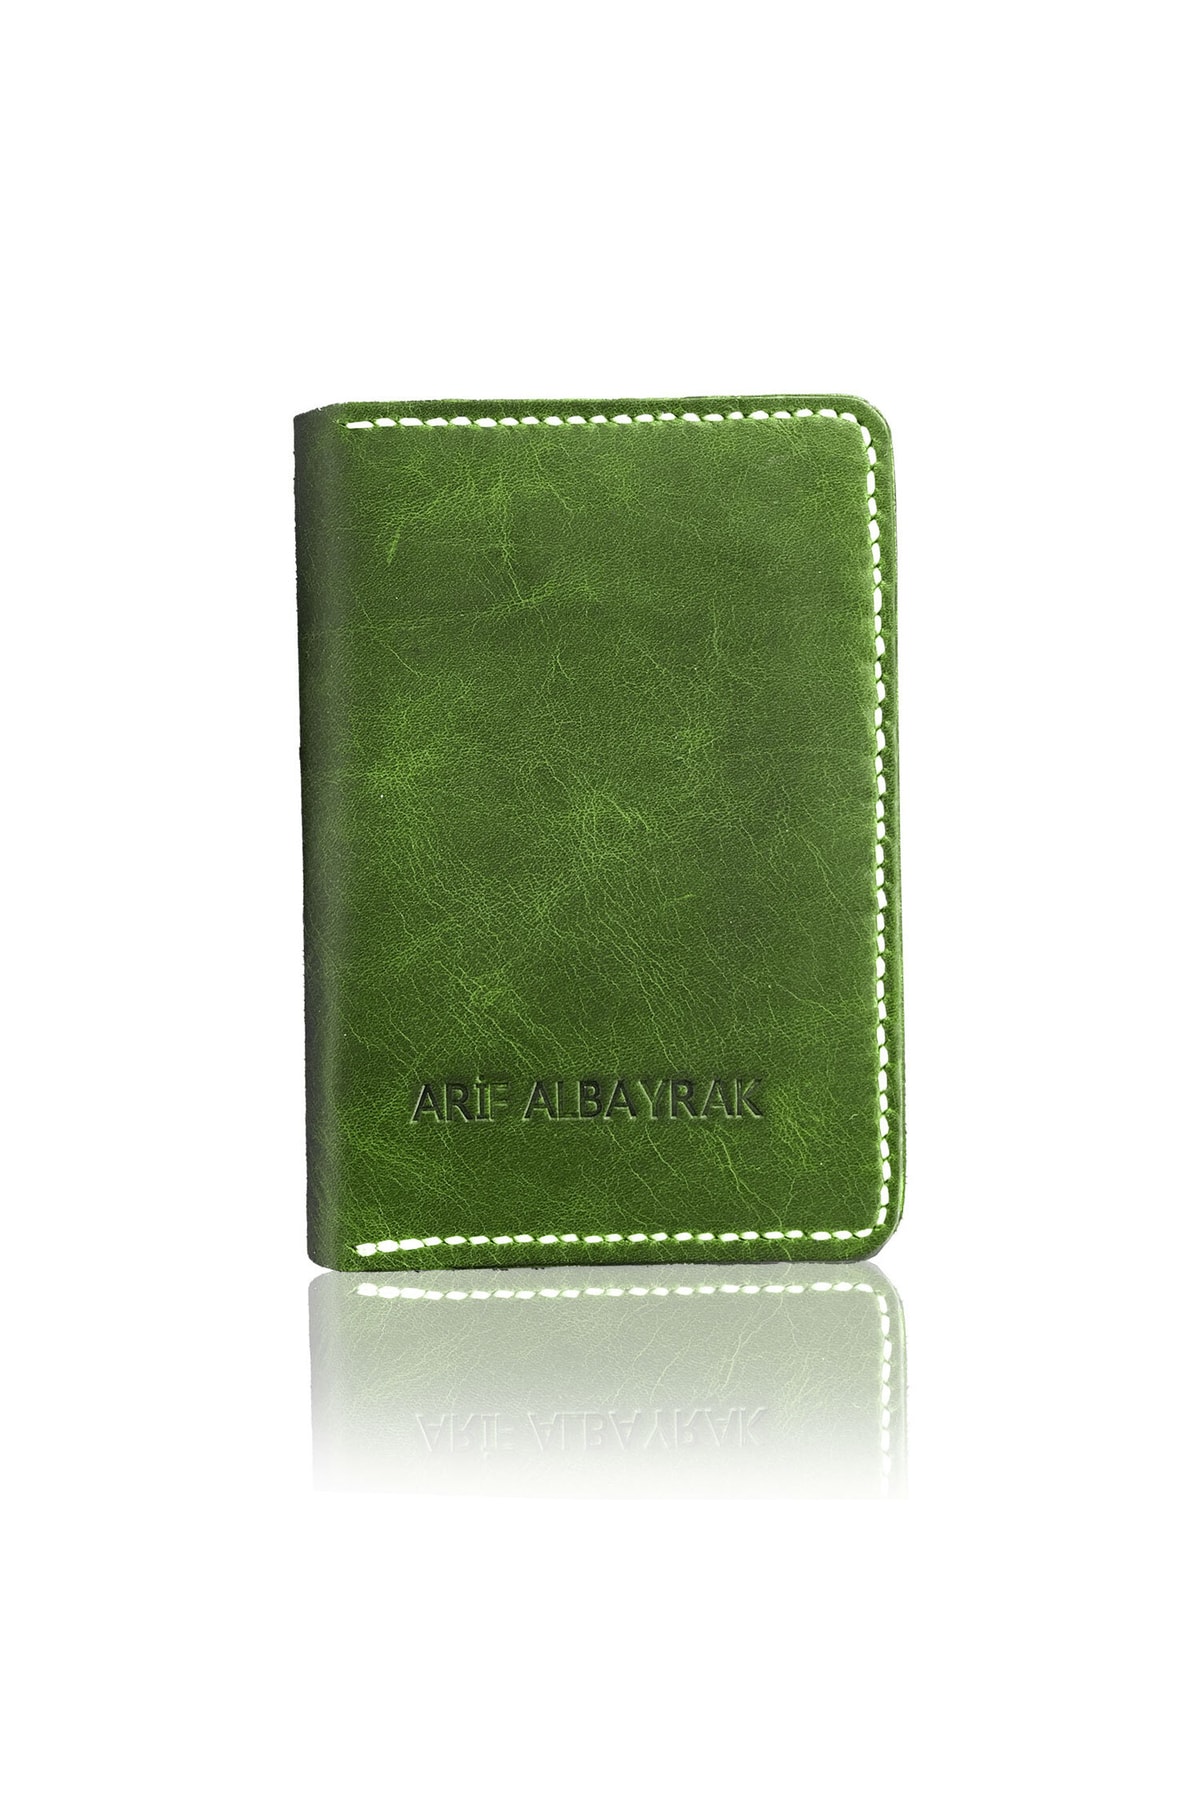 Çakıl Tasarım Hakiki Deri Isme Özel Pasaport Kılıfı - Yeşil